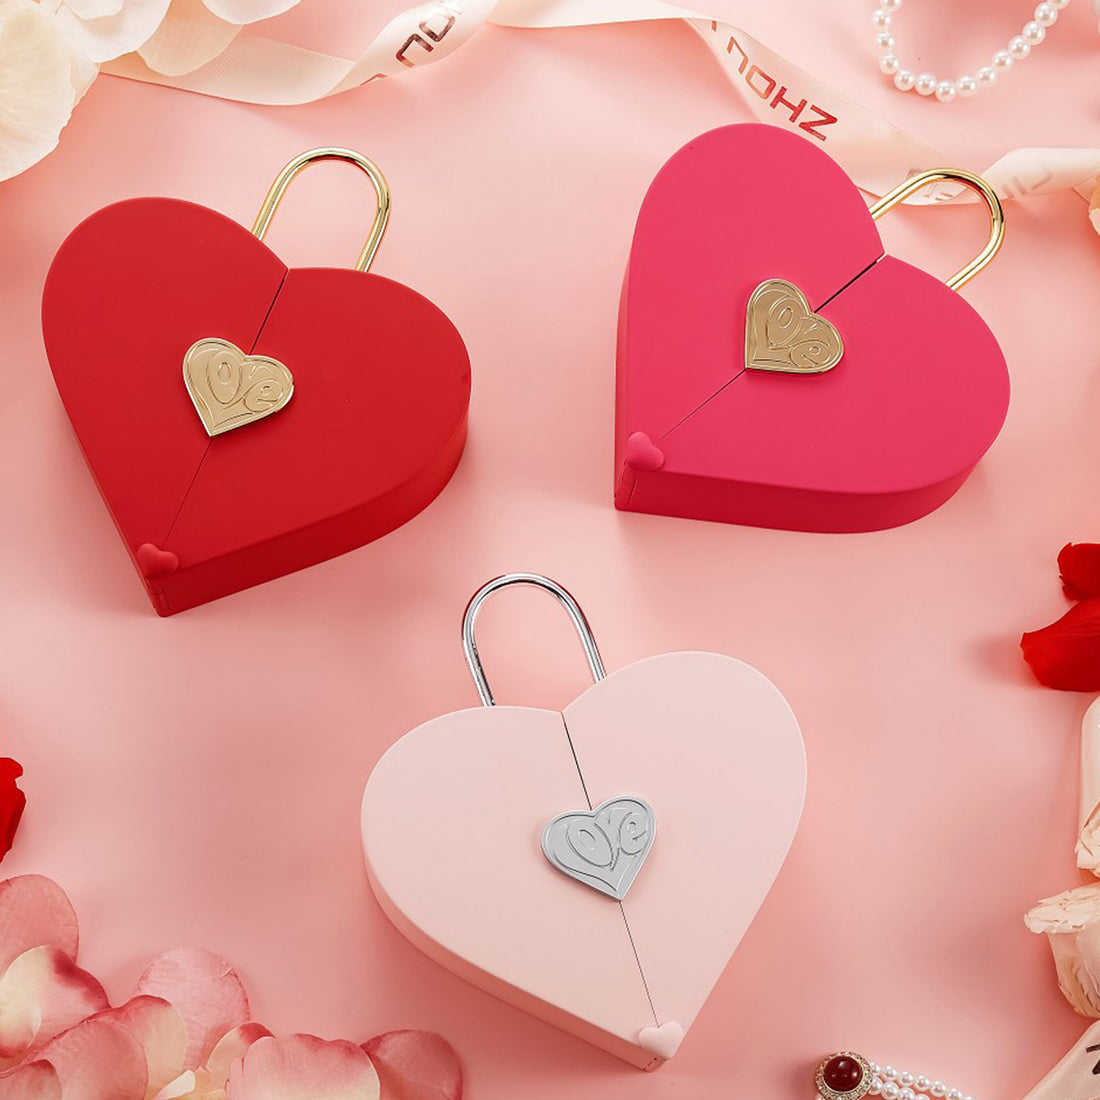 Entdecken Sie die perfekten Valentinstagsgeschenke in unserem Shop - mit 20% Rabatt!